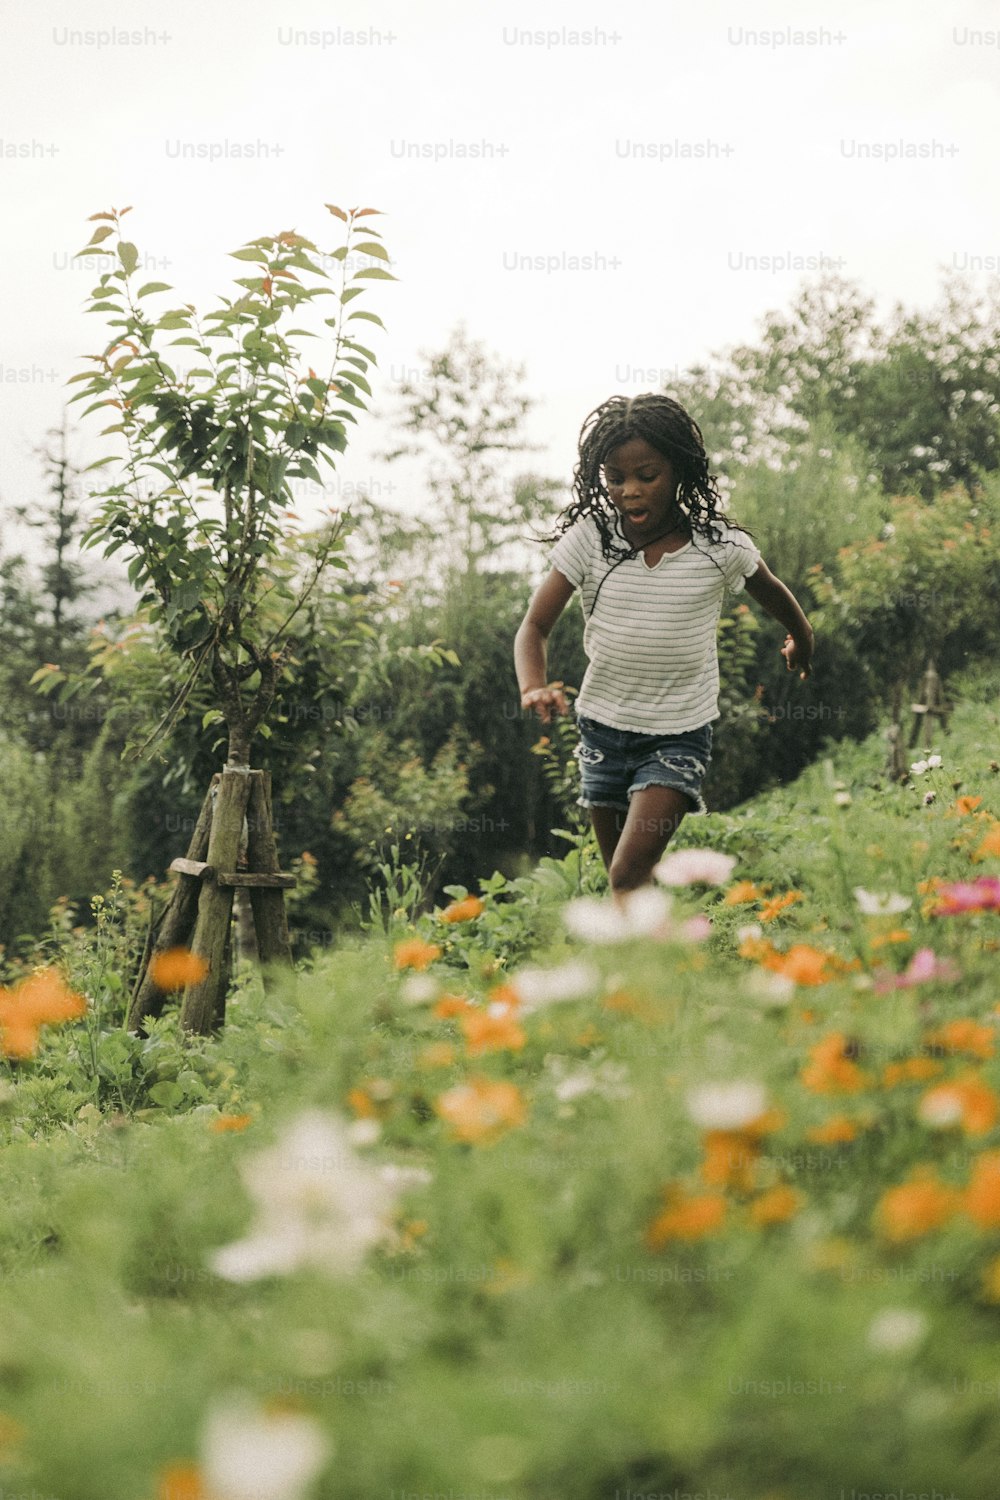 Una niña corriendo por un campo de flores